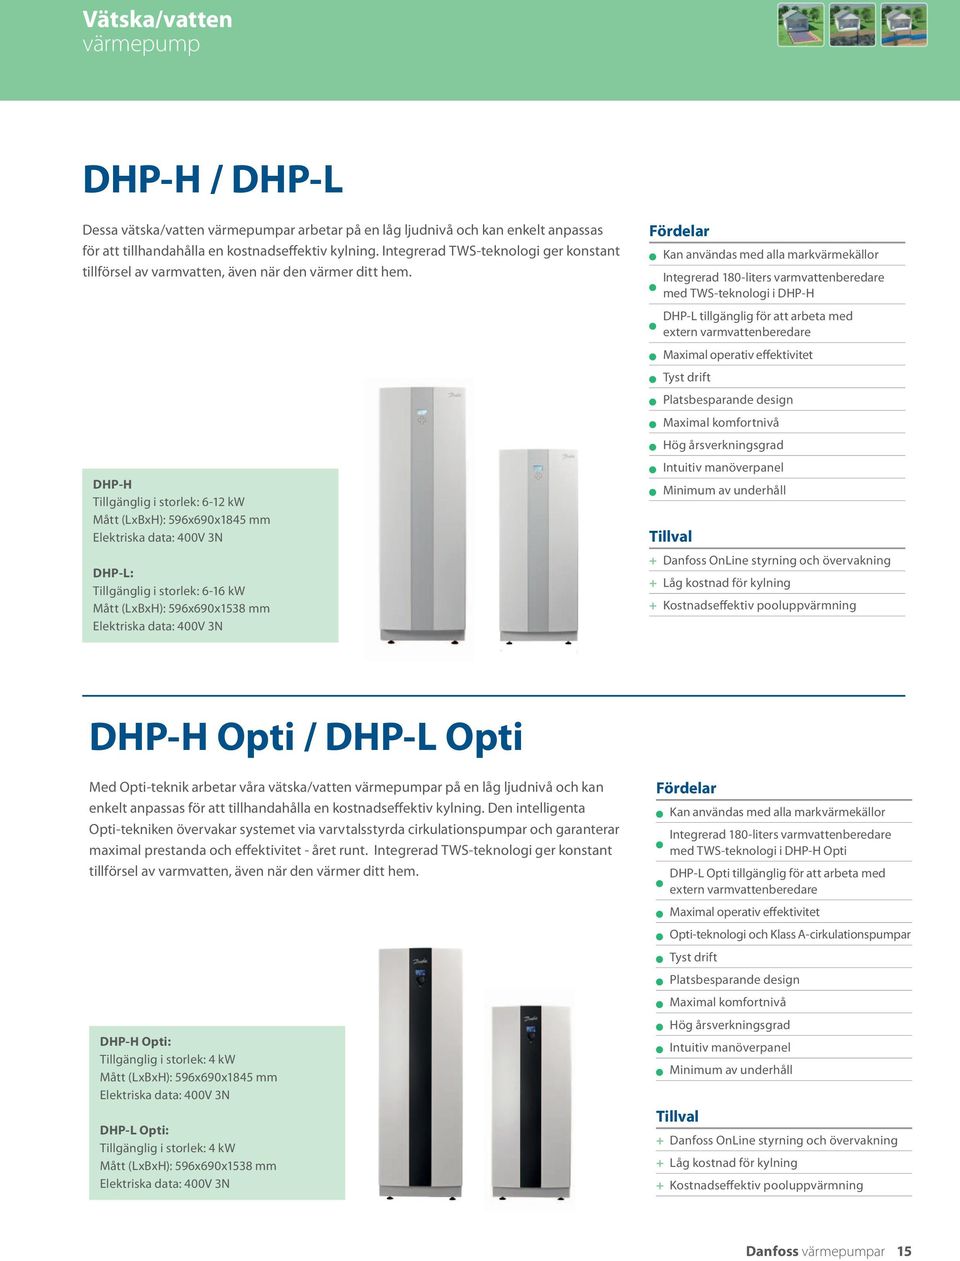 DHP-H Tillgänglig i storlek: 6-12 kw Mått (LxBxH): 596x690x1845 mm Elektriska data: 400V 3N DHP-L: Tillgänglig i storlek: 6-16 kw Mått (LxBxH): 596x690x1538 mm Elektriska data: 400V 3N Fördelar Kan